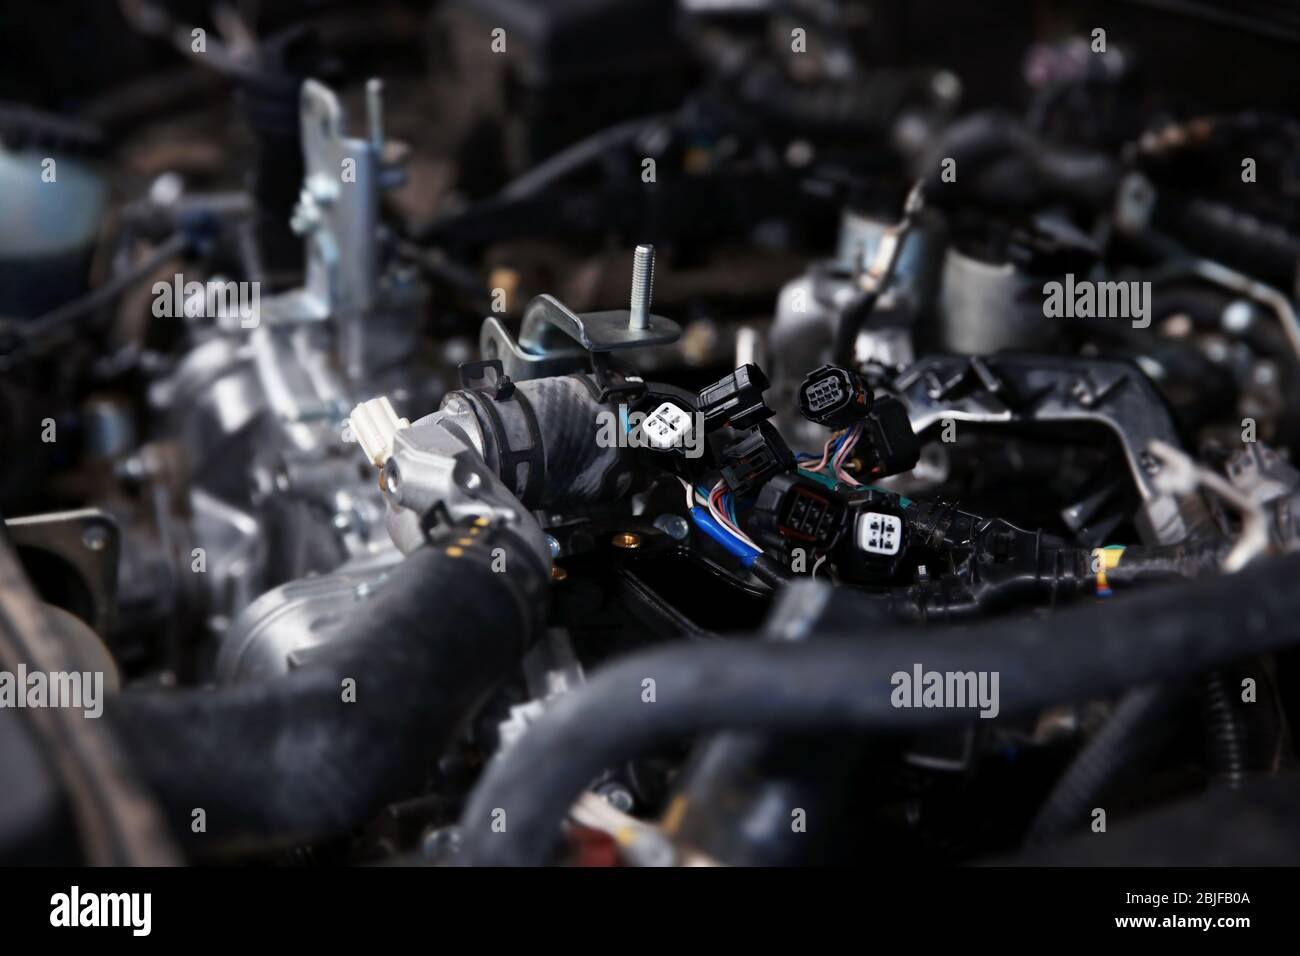 Car engine, closeup Stock Photo